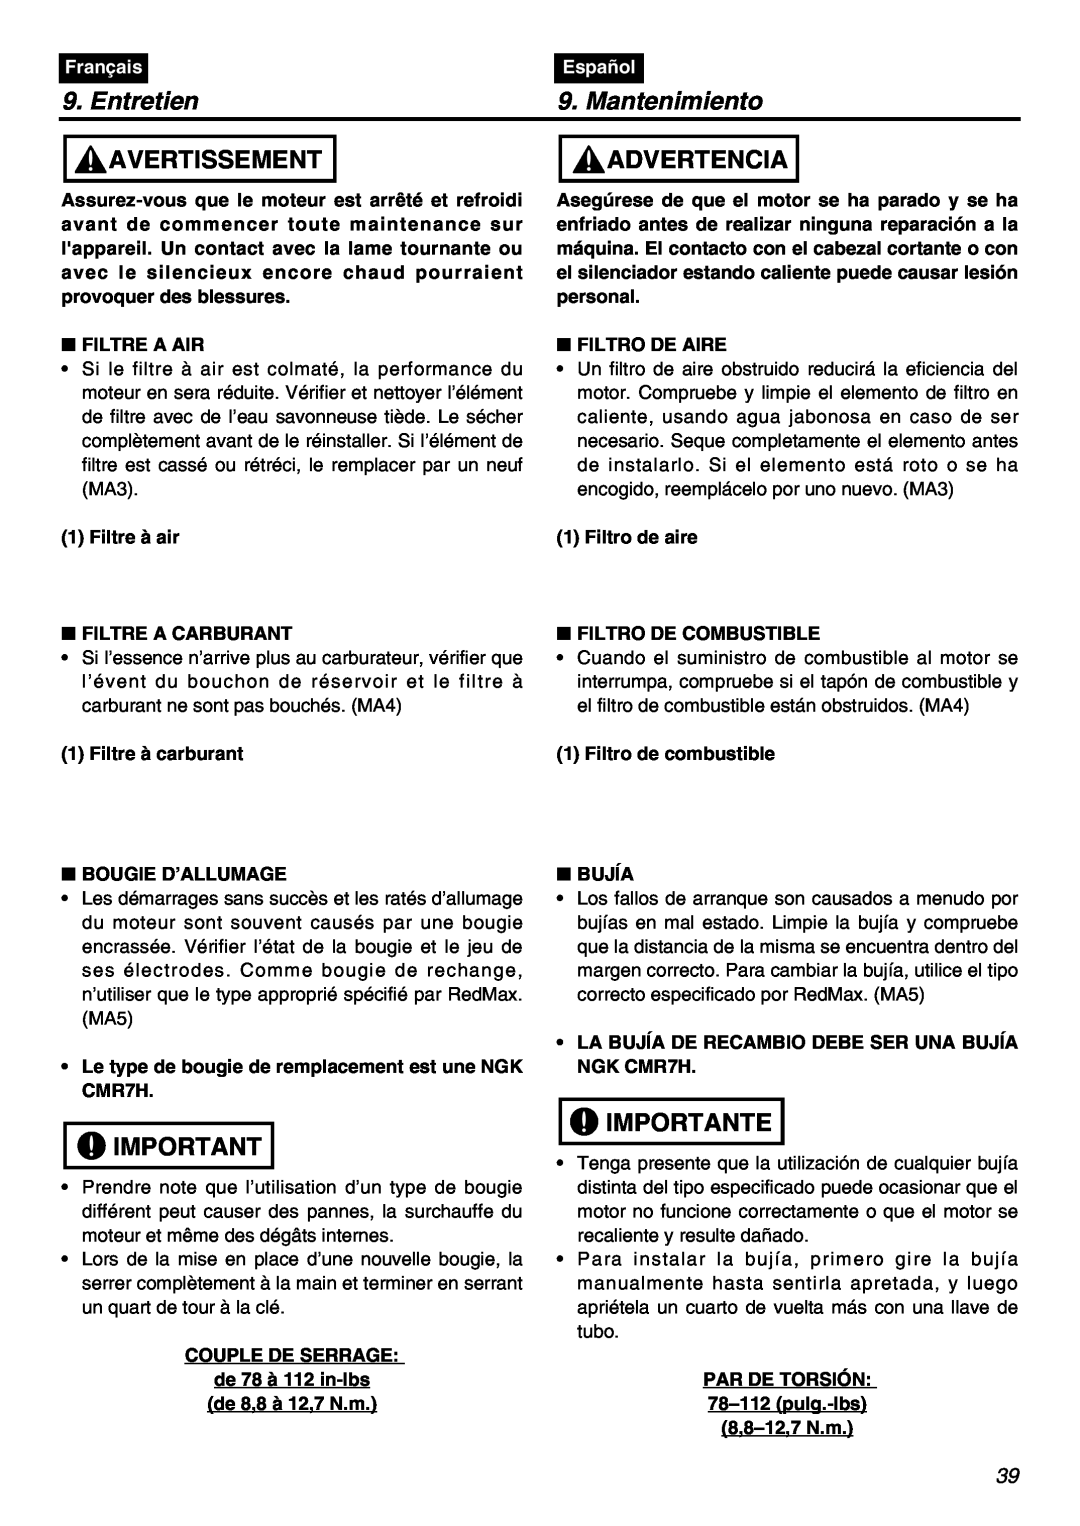 RedMax SRTZ2401F manual Entretien, Mantenimiento, Avertissement, Advertencia, Importante, Français, Español 